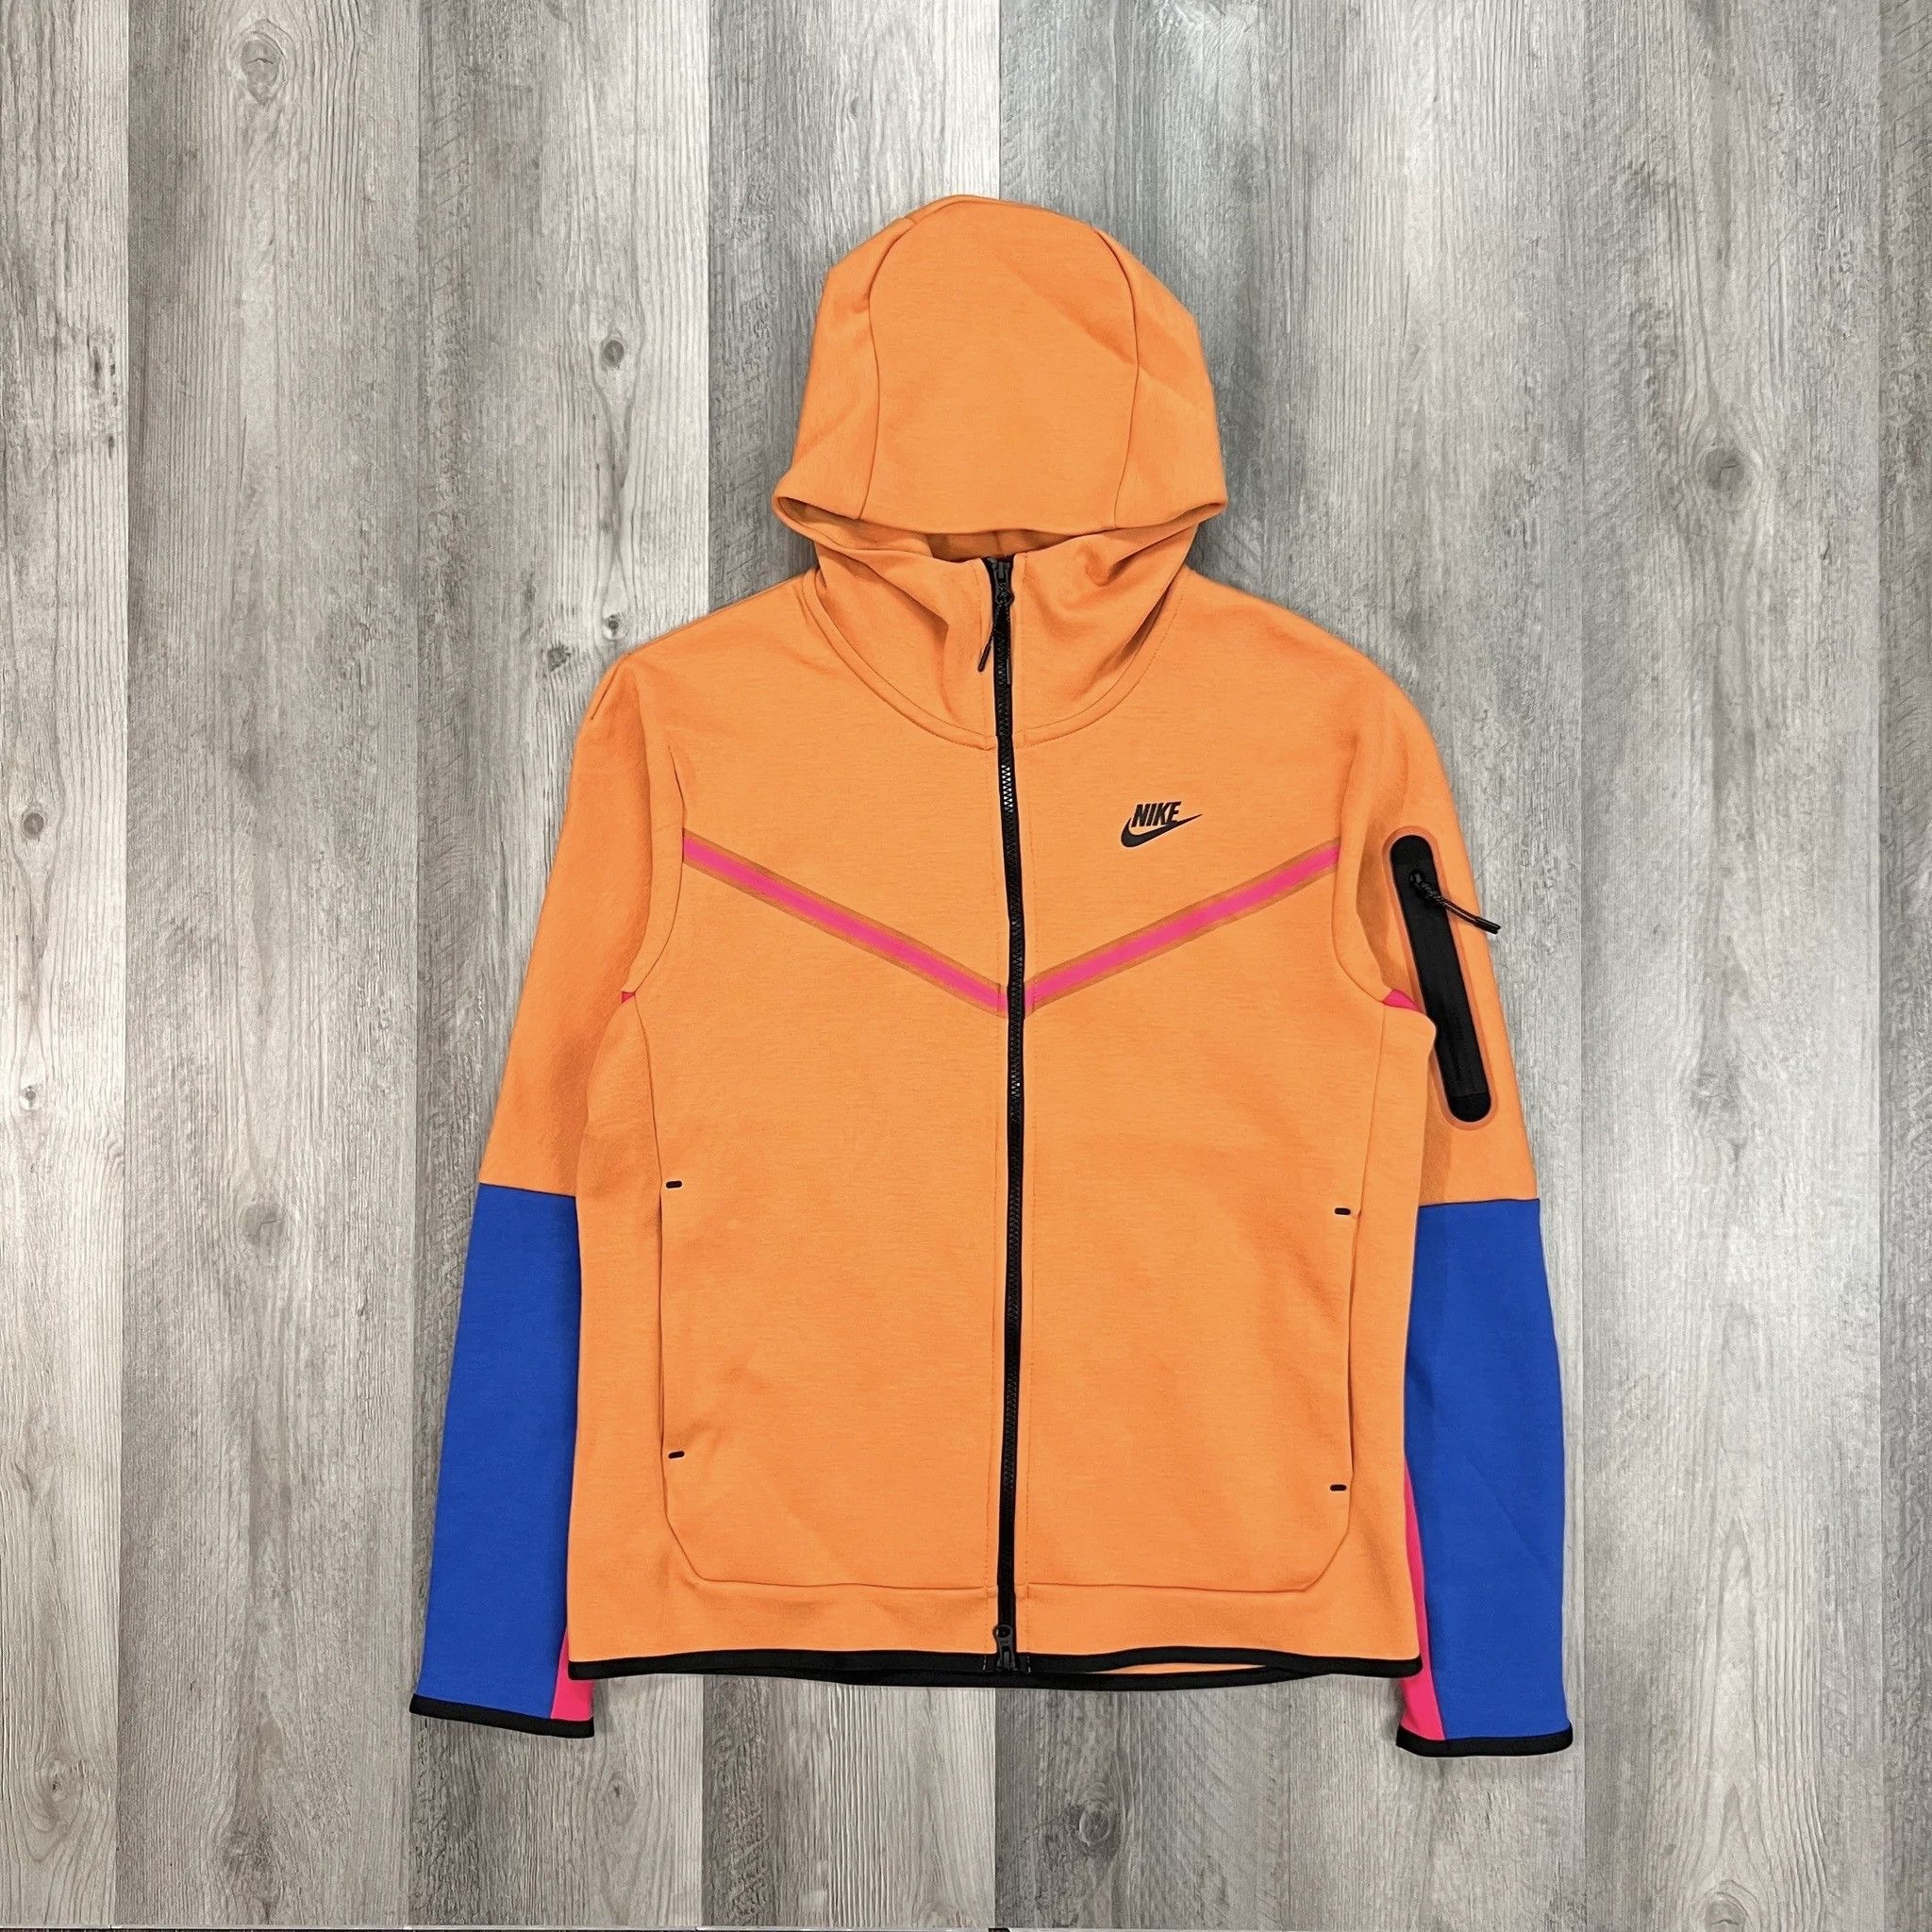 Nike Nike Tech Fleece Full Zip Hoodie Hot Curry Rush Pink Blue | Grailed